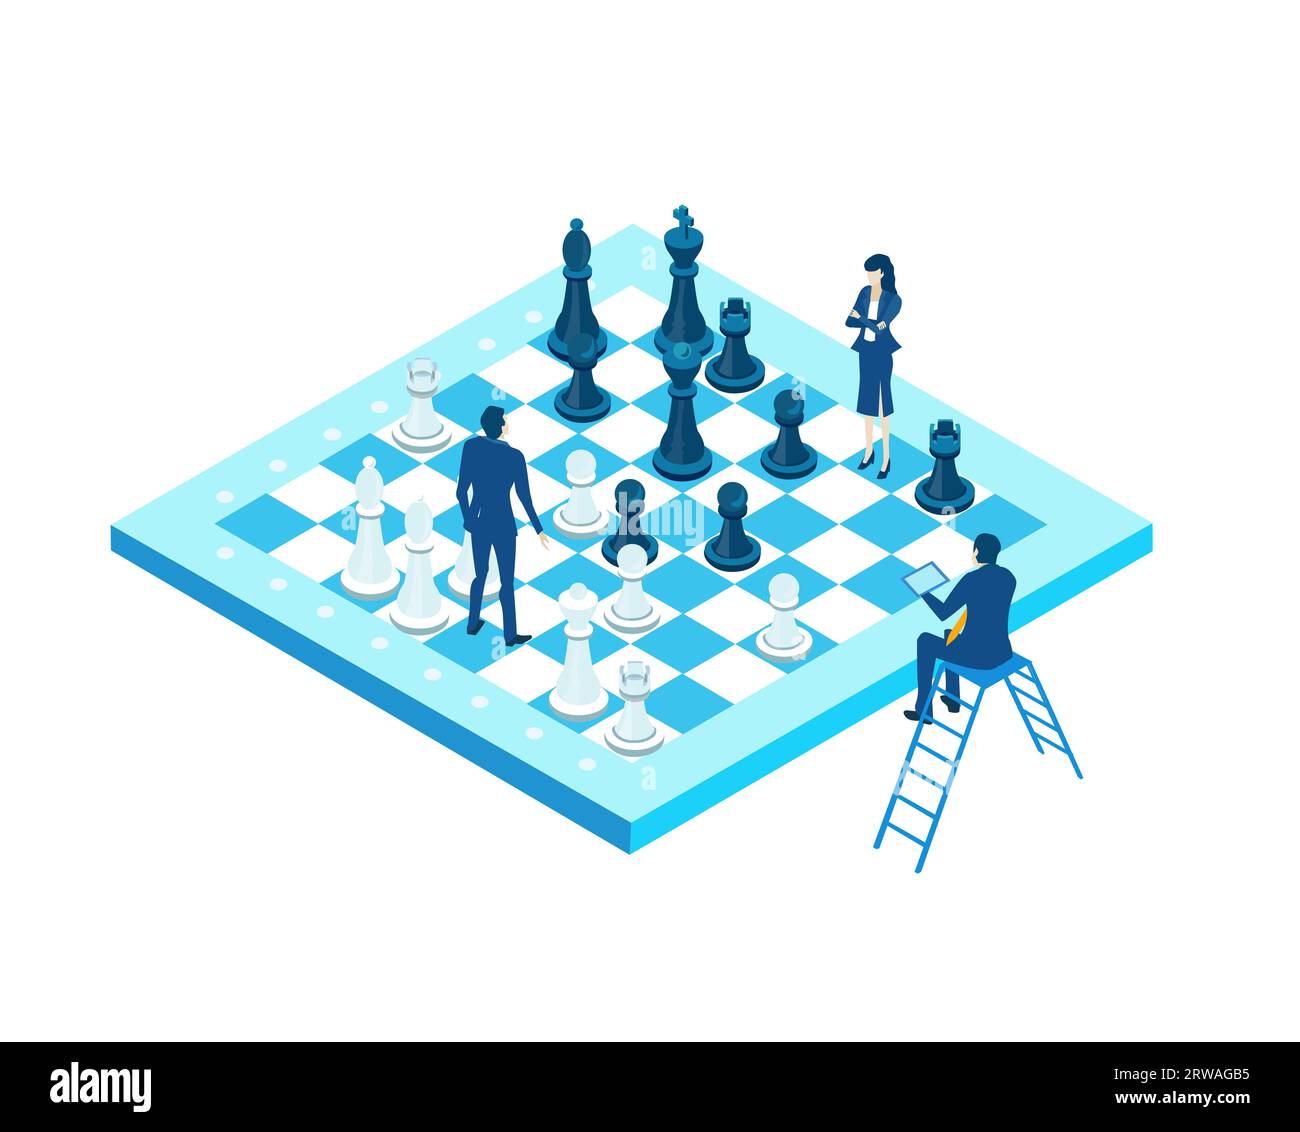 Hommes d'affaires jouant à un jeu d'échecs. Compétition, travail d'équipe, illustration isométrique du concept gagnant Banque D'Images